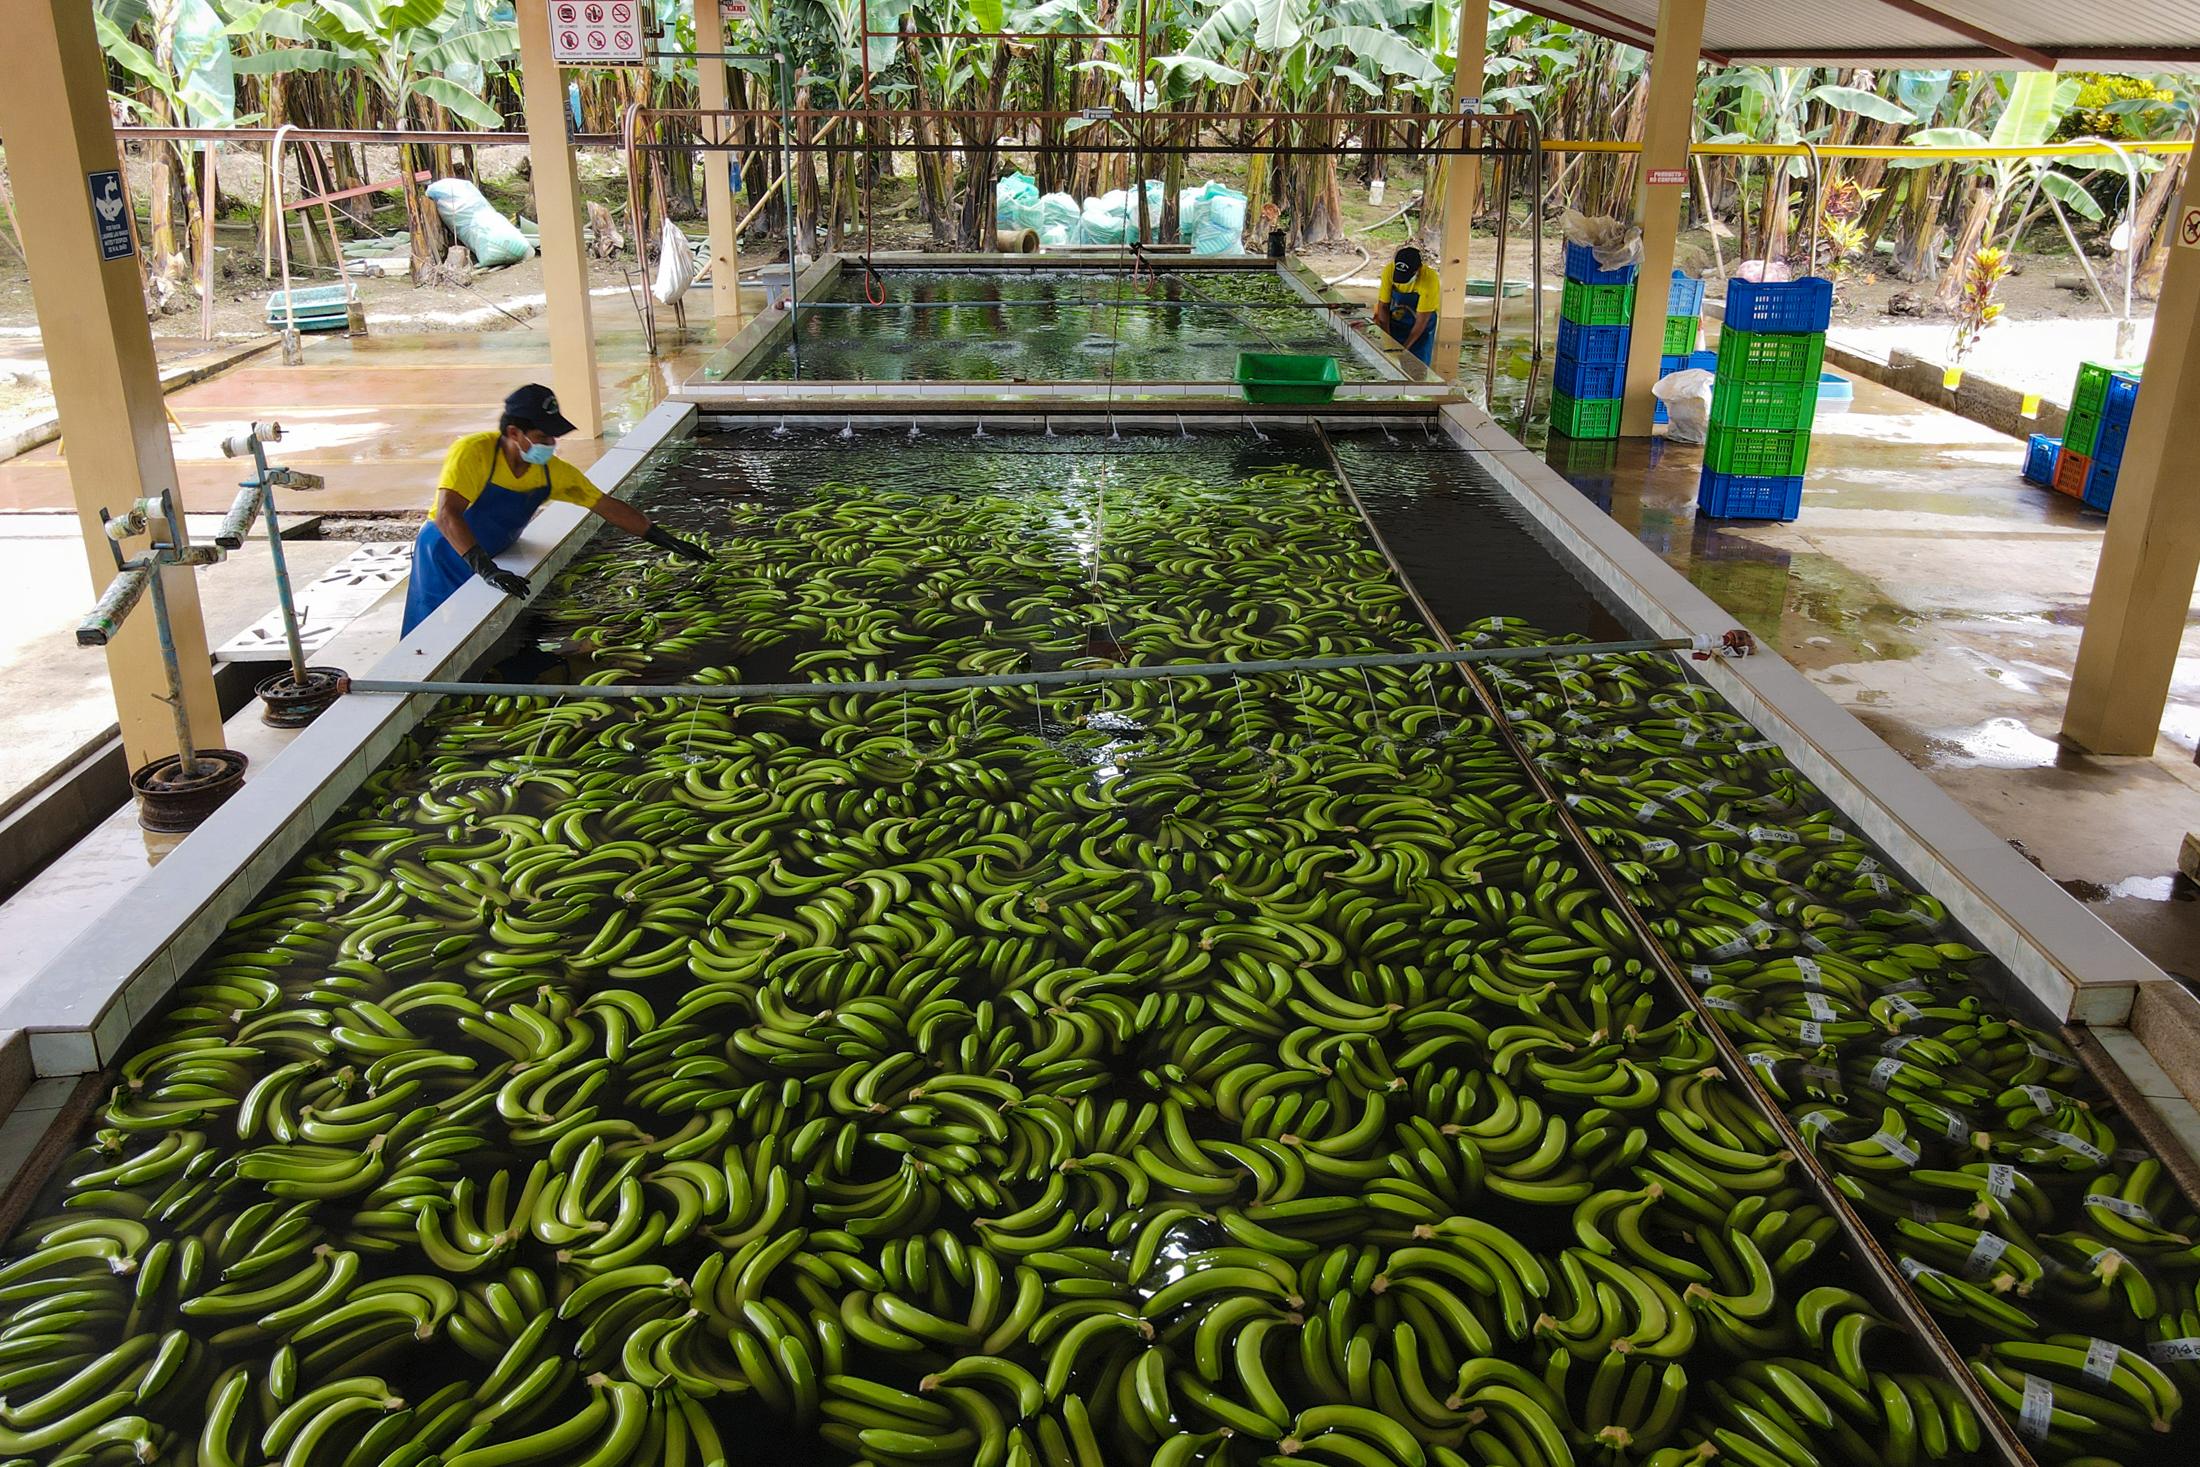 Banana cultivation in Ecuador - Plantas bananeras de la finca productora “La lucha” de la...